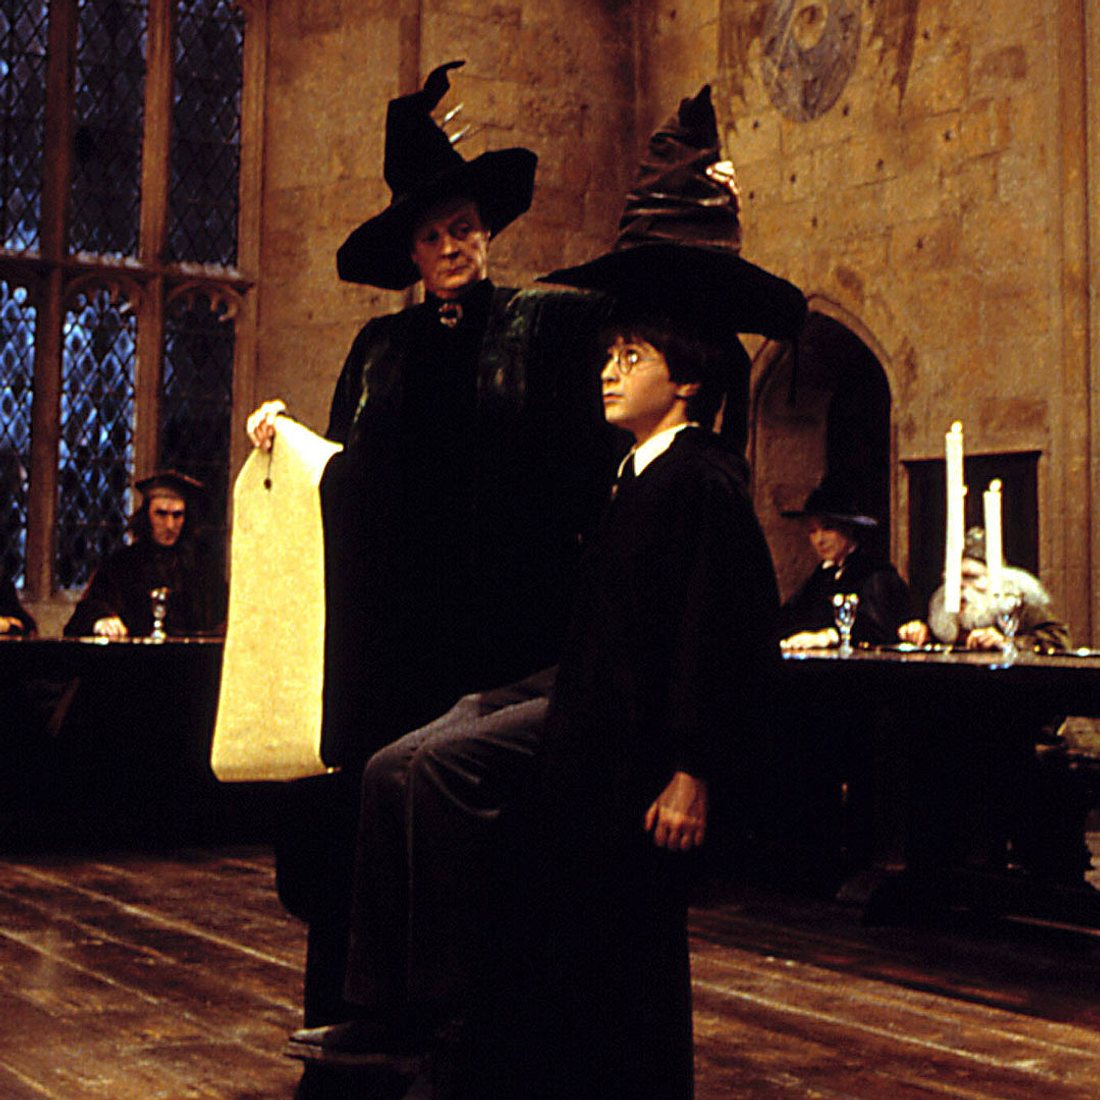 Harry Potter geheime Geschichten: Den Sprechenden Hut sollte es nicht geben!